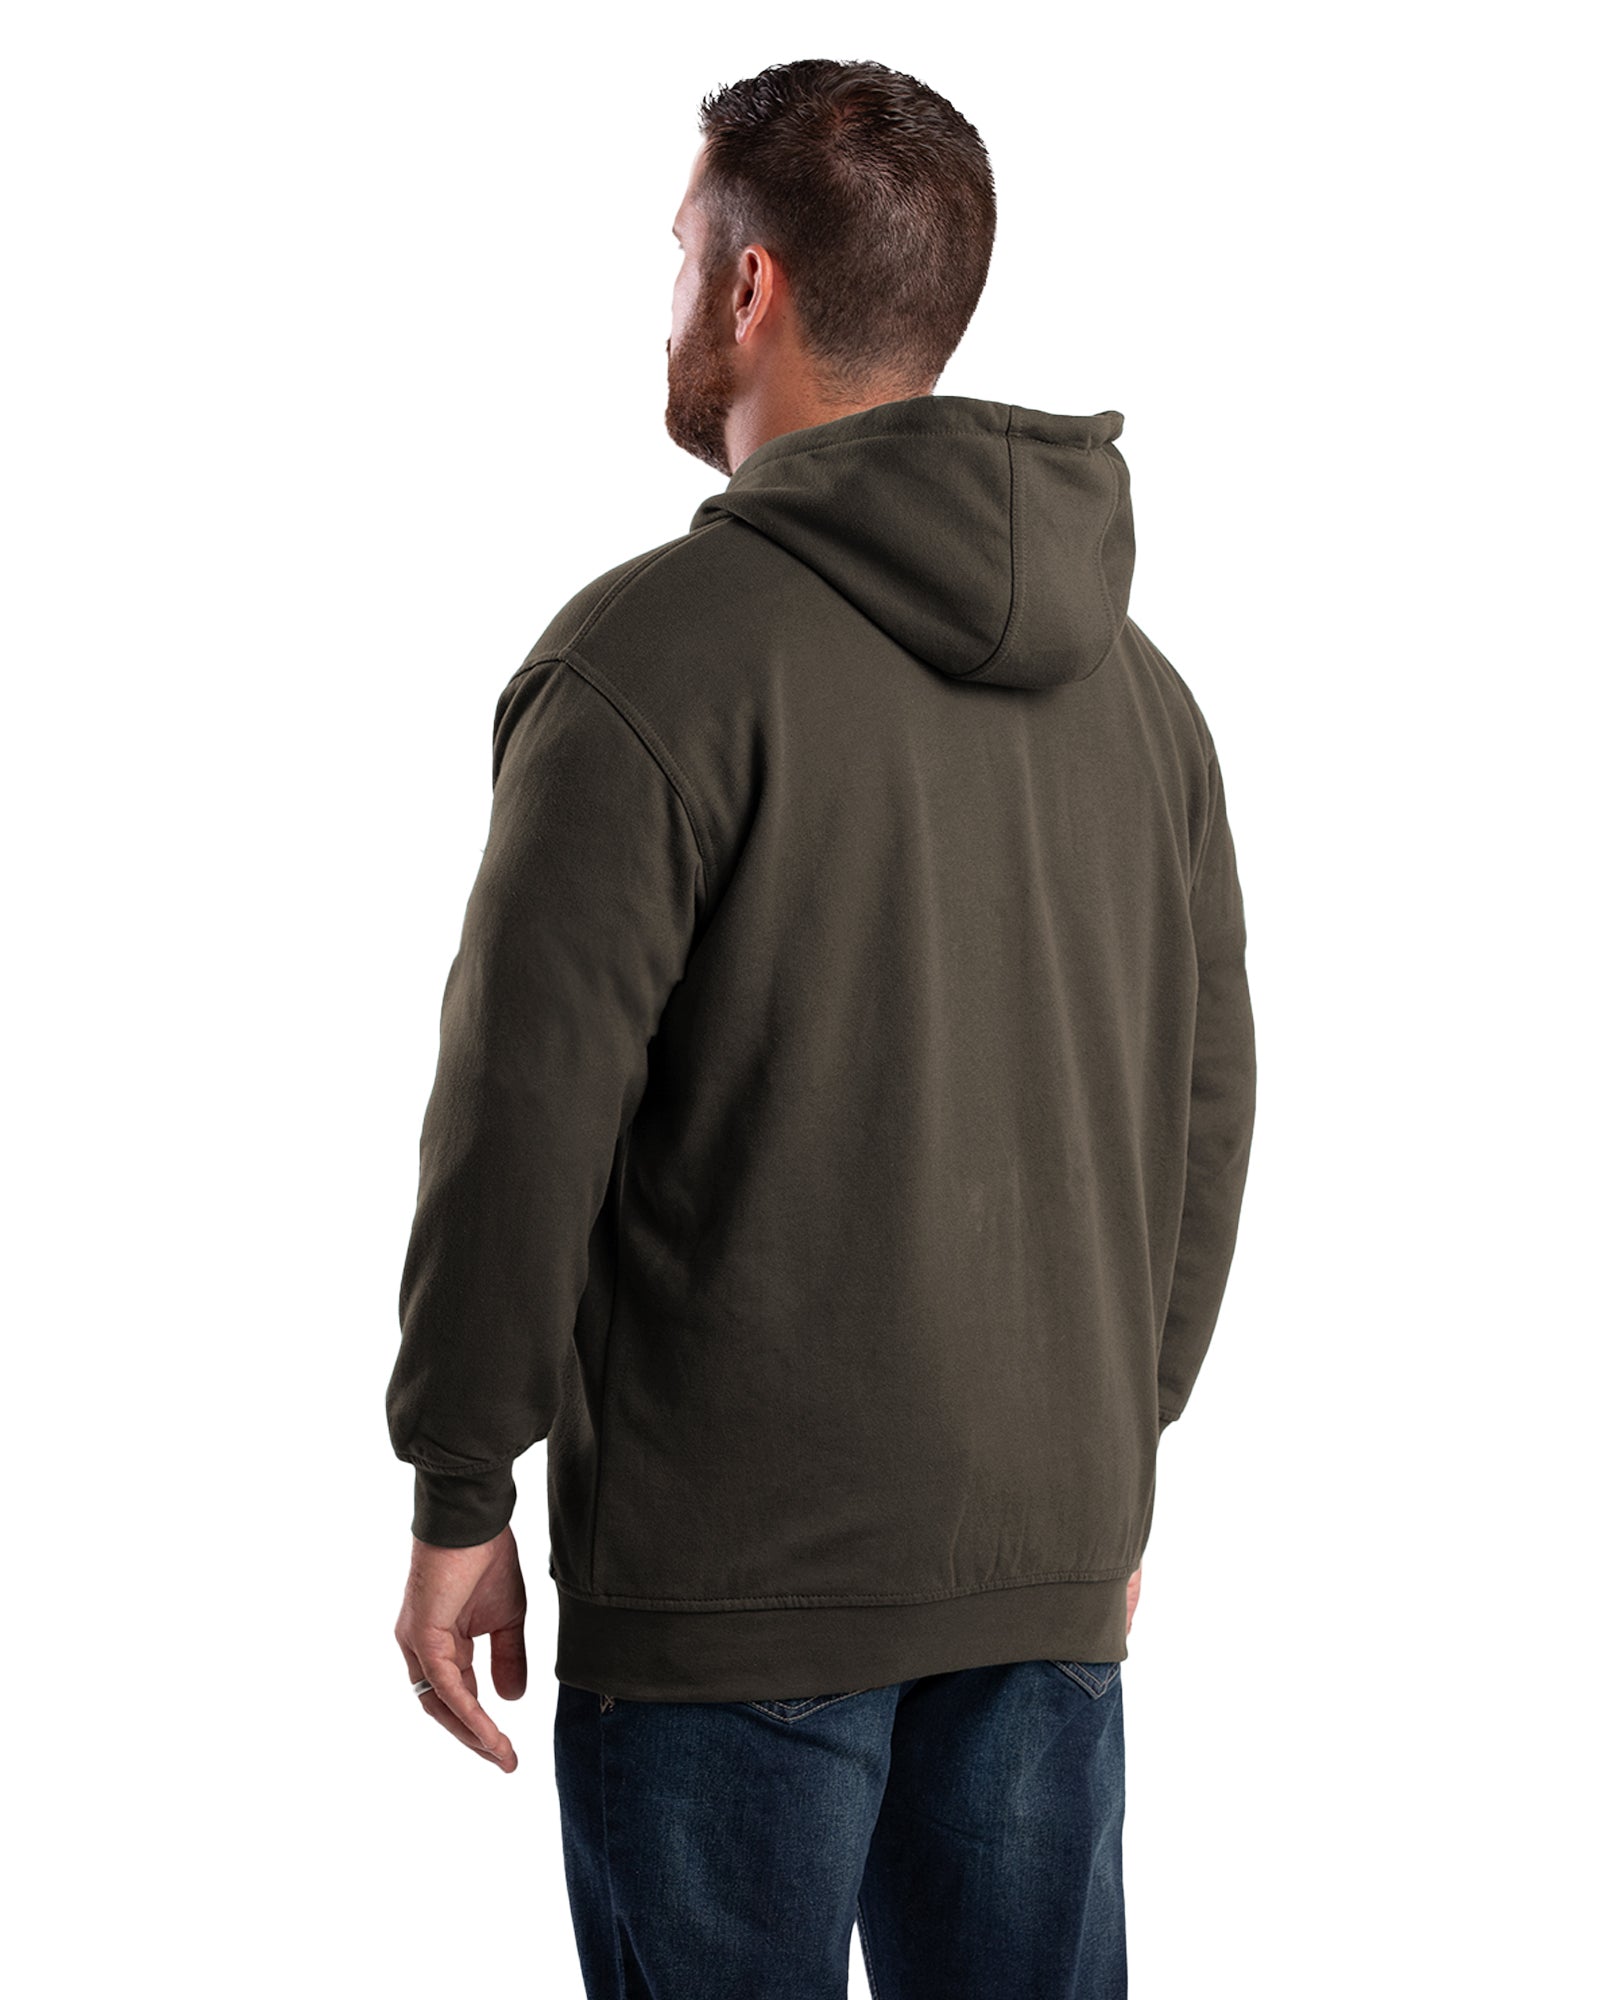 Men's Thermal-Lined Full-Zip Hooded Sweatshirt